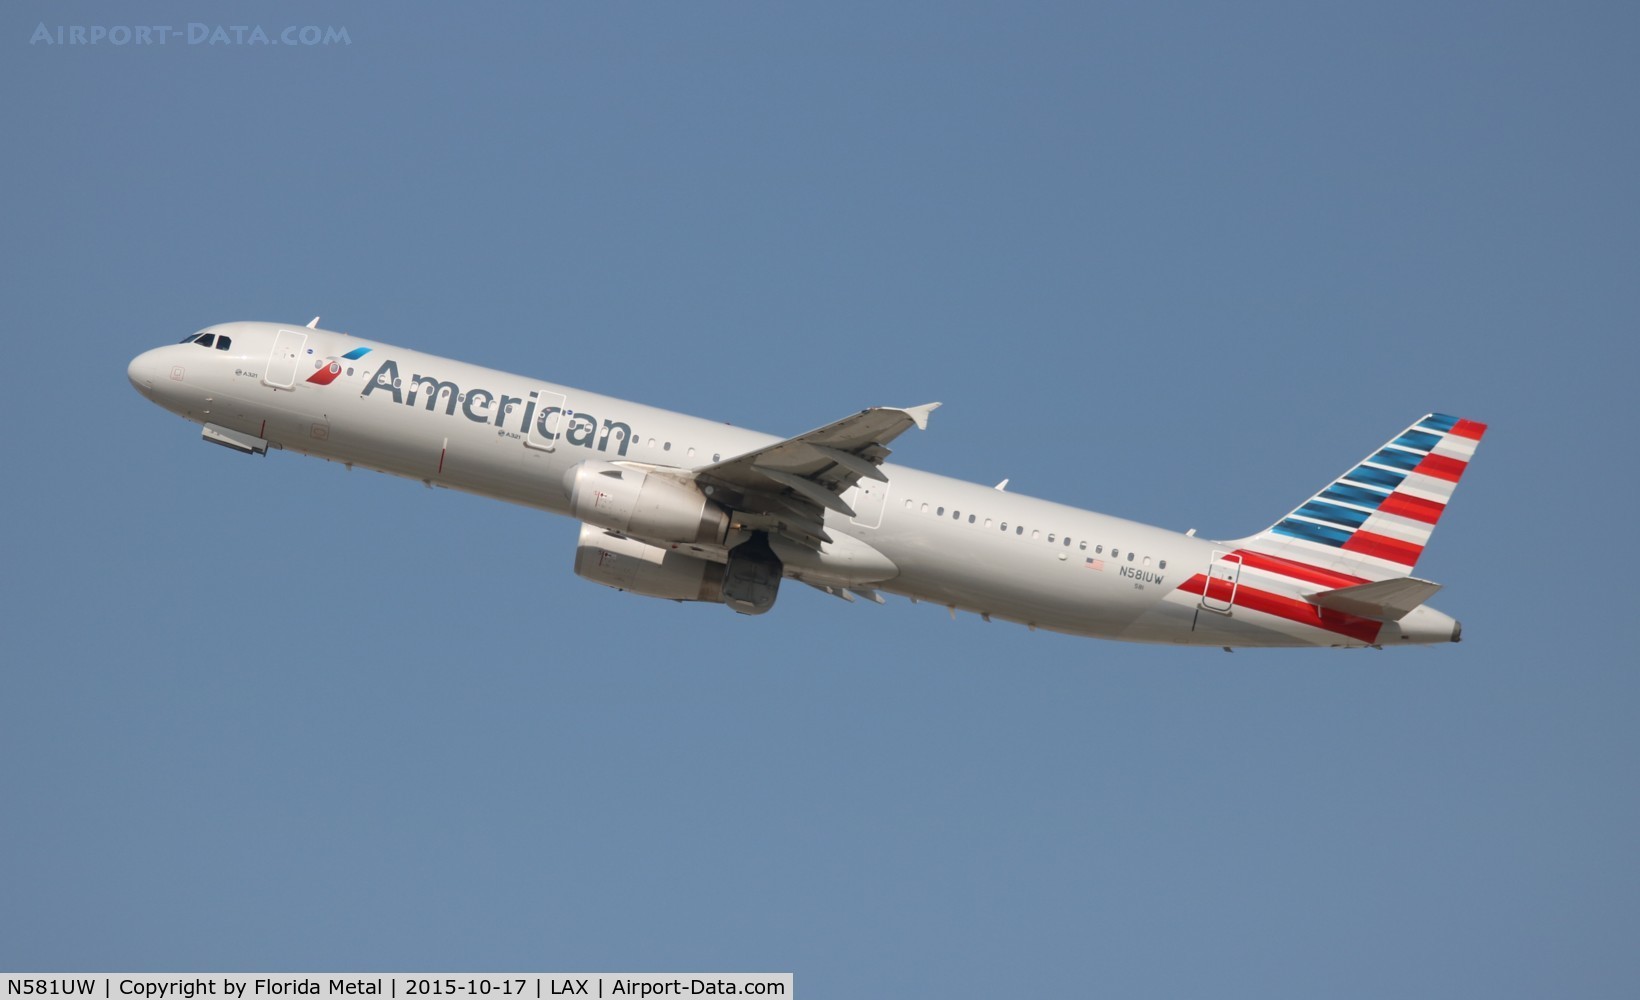 N581UW, 2014 Airbus A321-231 C/N 6152, American